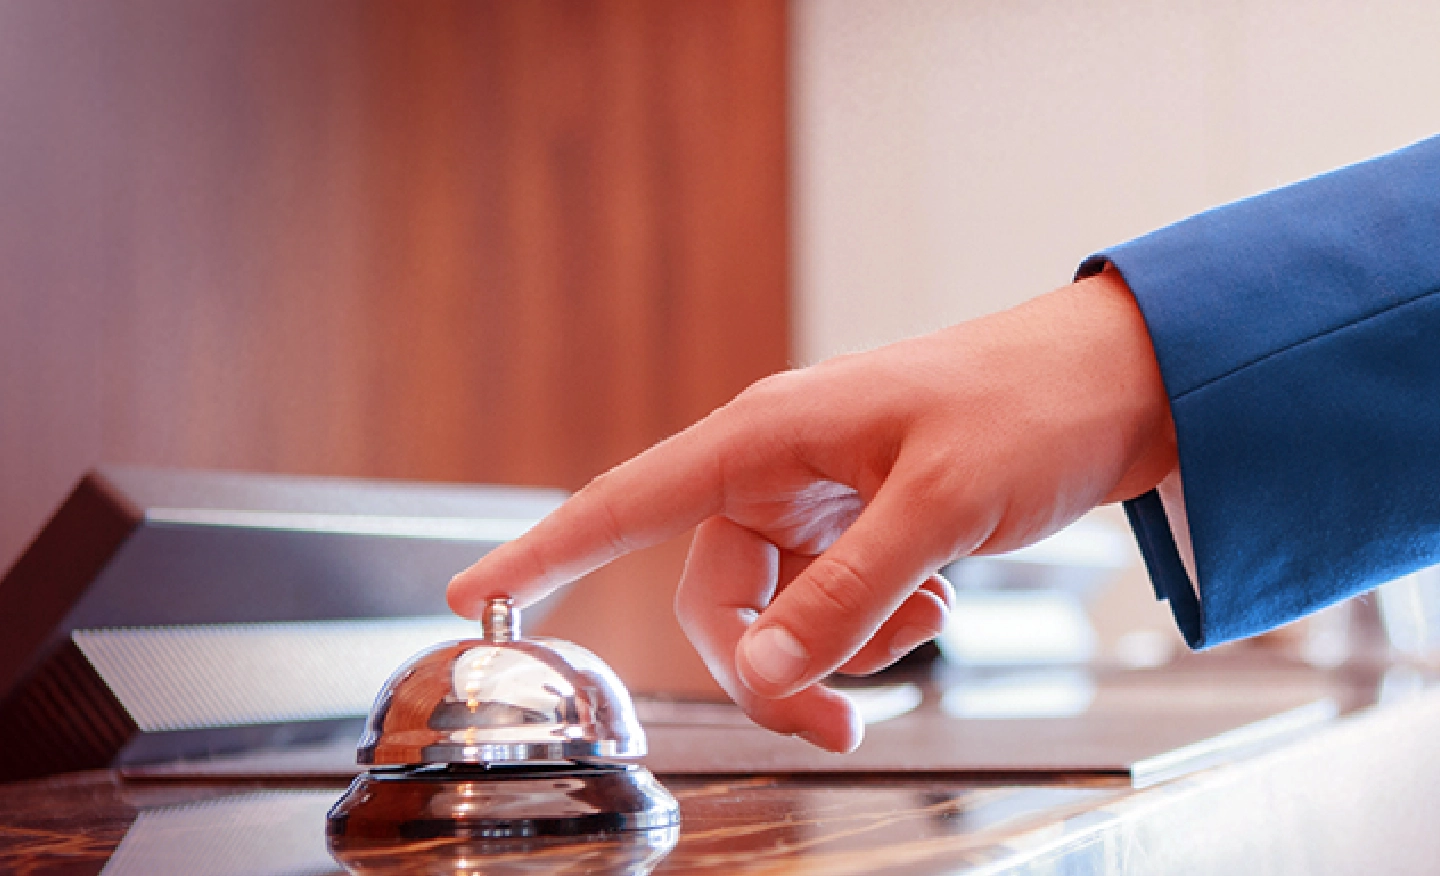 #BradescoAcessivel #PraTodoMundoVer: Uma mão de um homem que usa terno azul está com o dedo indicador sobre o botão da campanhia típica de balcões de hotel.